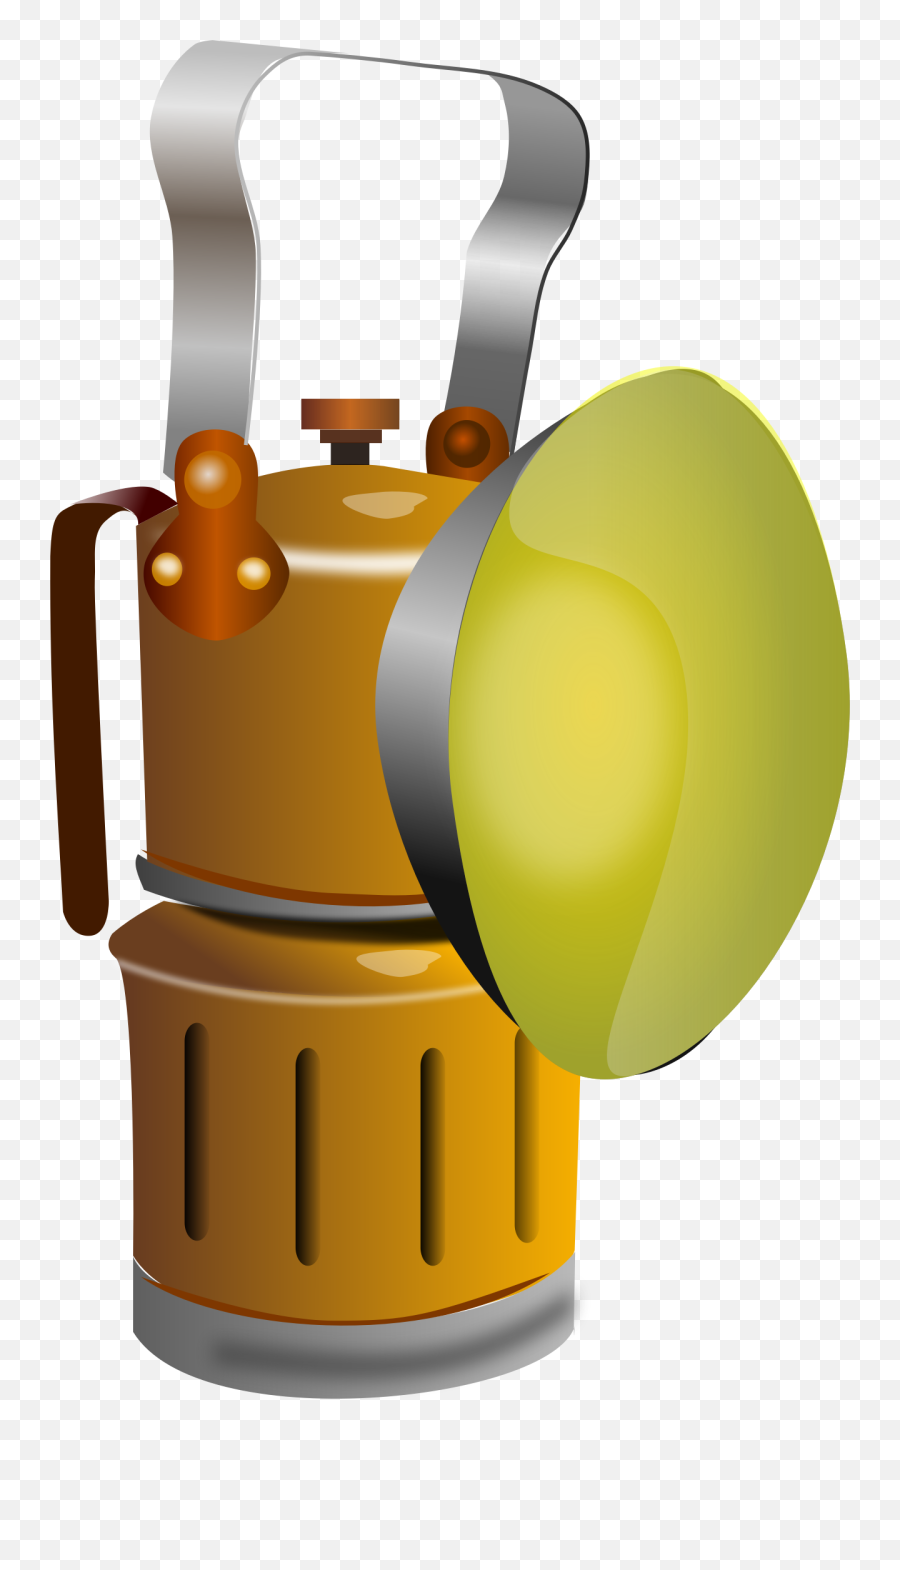 Lantern Clipart Mining Lantern Mining Transparent Free For - Lampara Carburo Png Emoji,Lantern Clipart